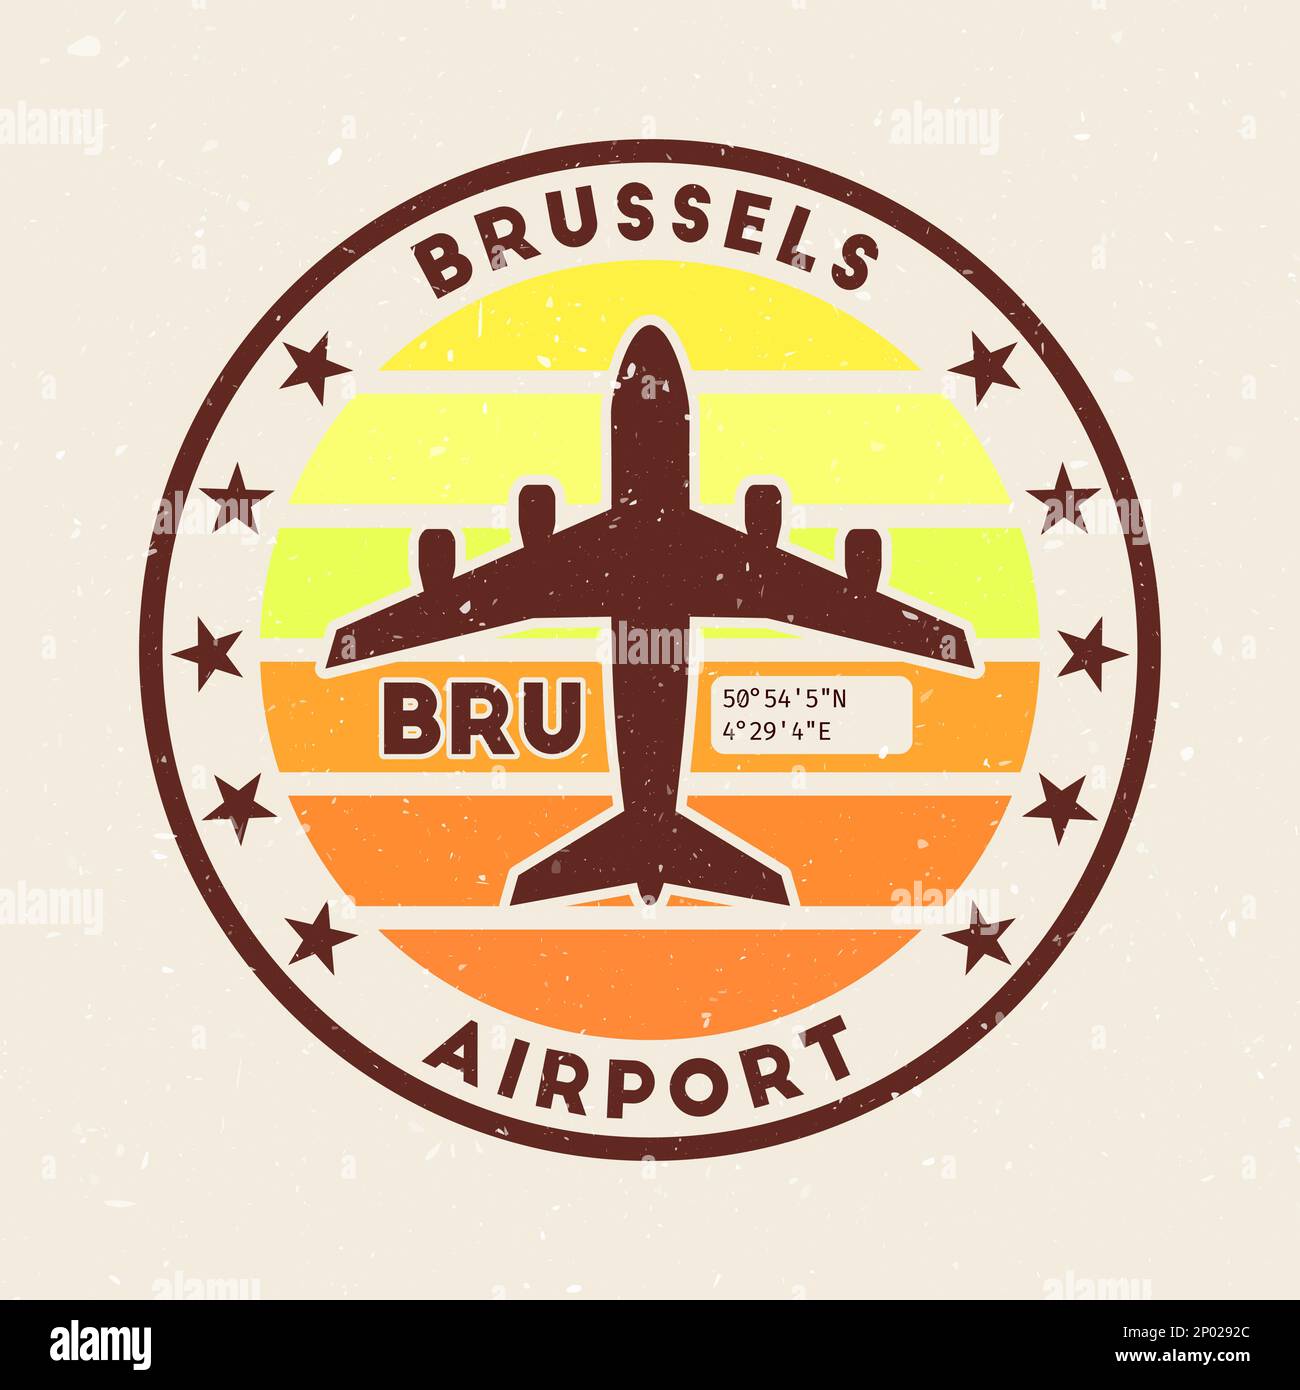 Abzeichen des Brüsseler Flughafens. Rundes Abzeichen mit Vintage-Streifen, Flugzeugform, Flughafen-IATA-Code und GPS-Koordinaten. Kreative Vektordarstellung. Stock Vektor